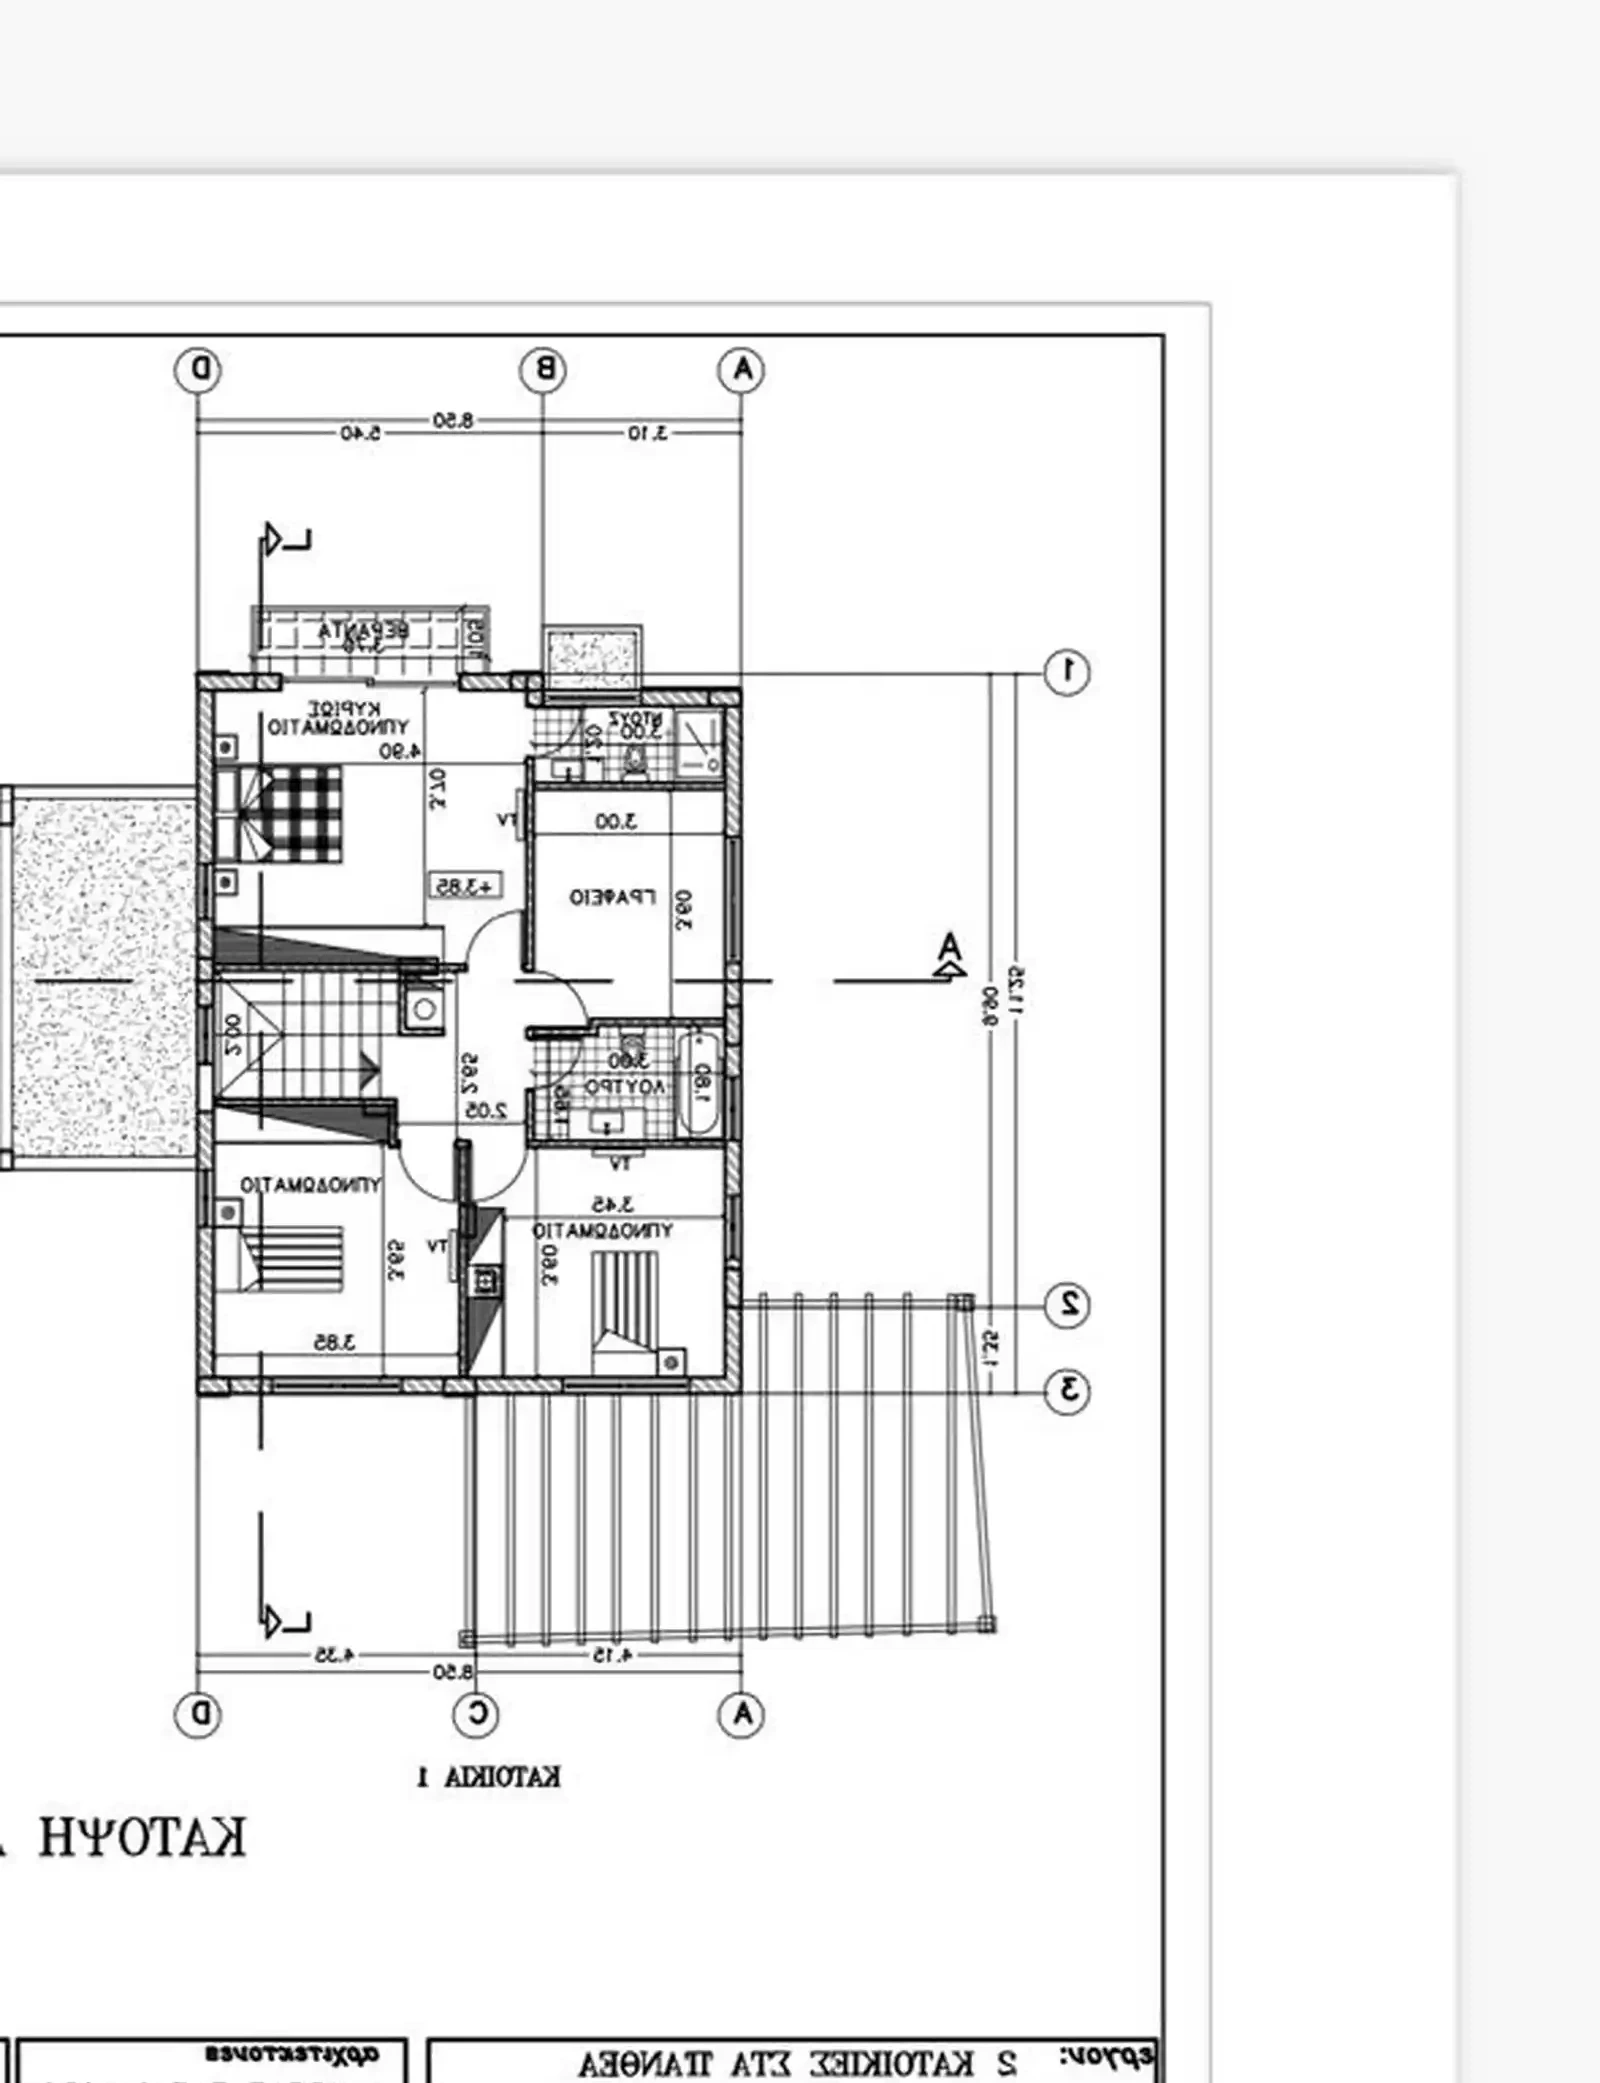 5-bedroom detached house fоr sаle €740.000, image 1